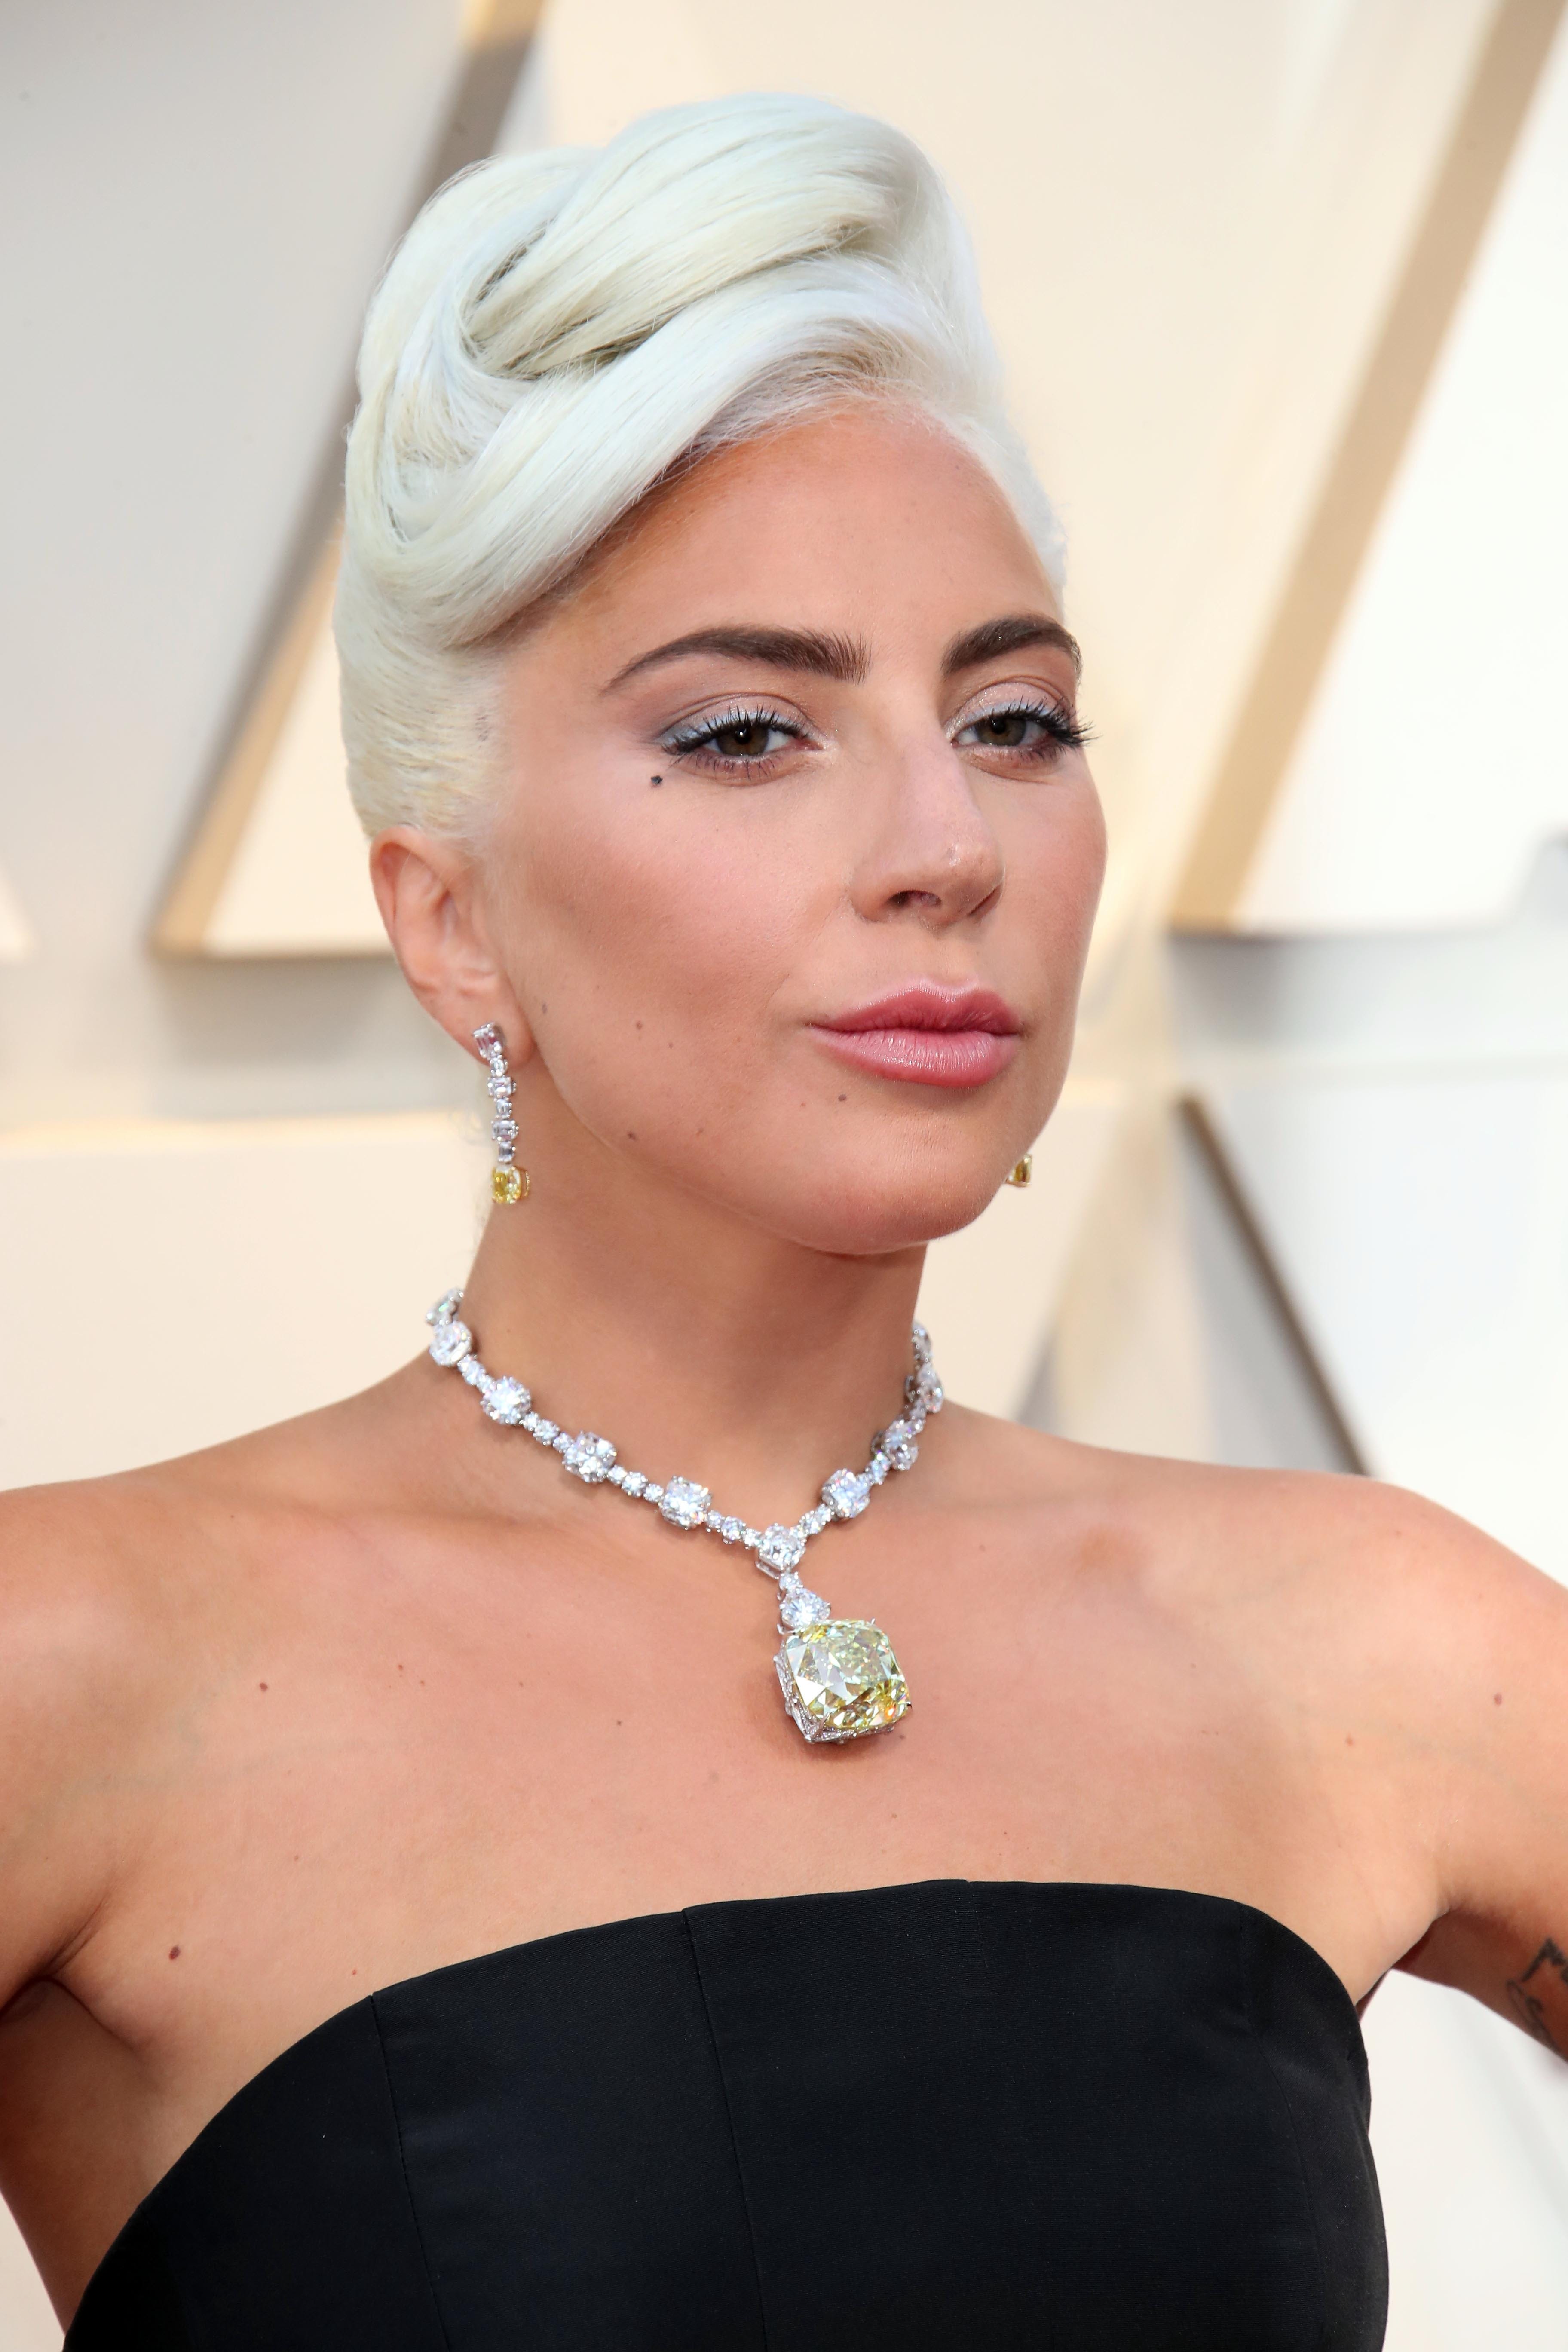 Oscars 2019: Lady Gaga shines in 